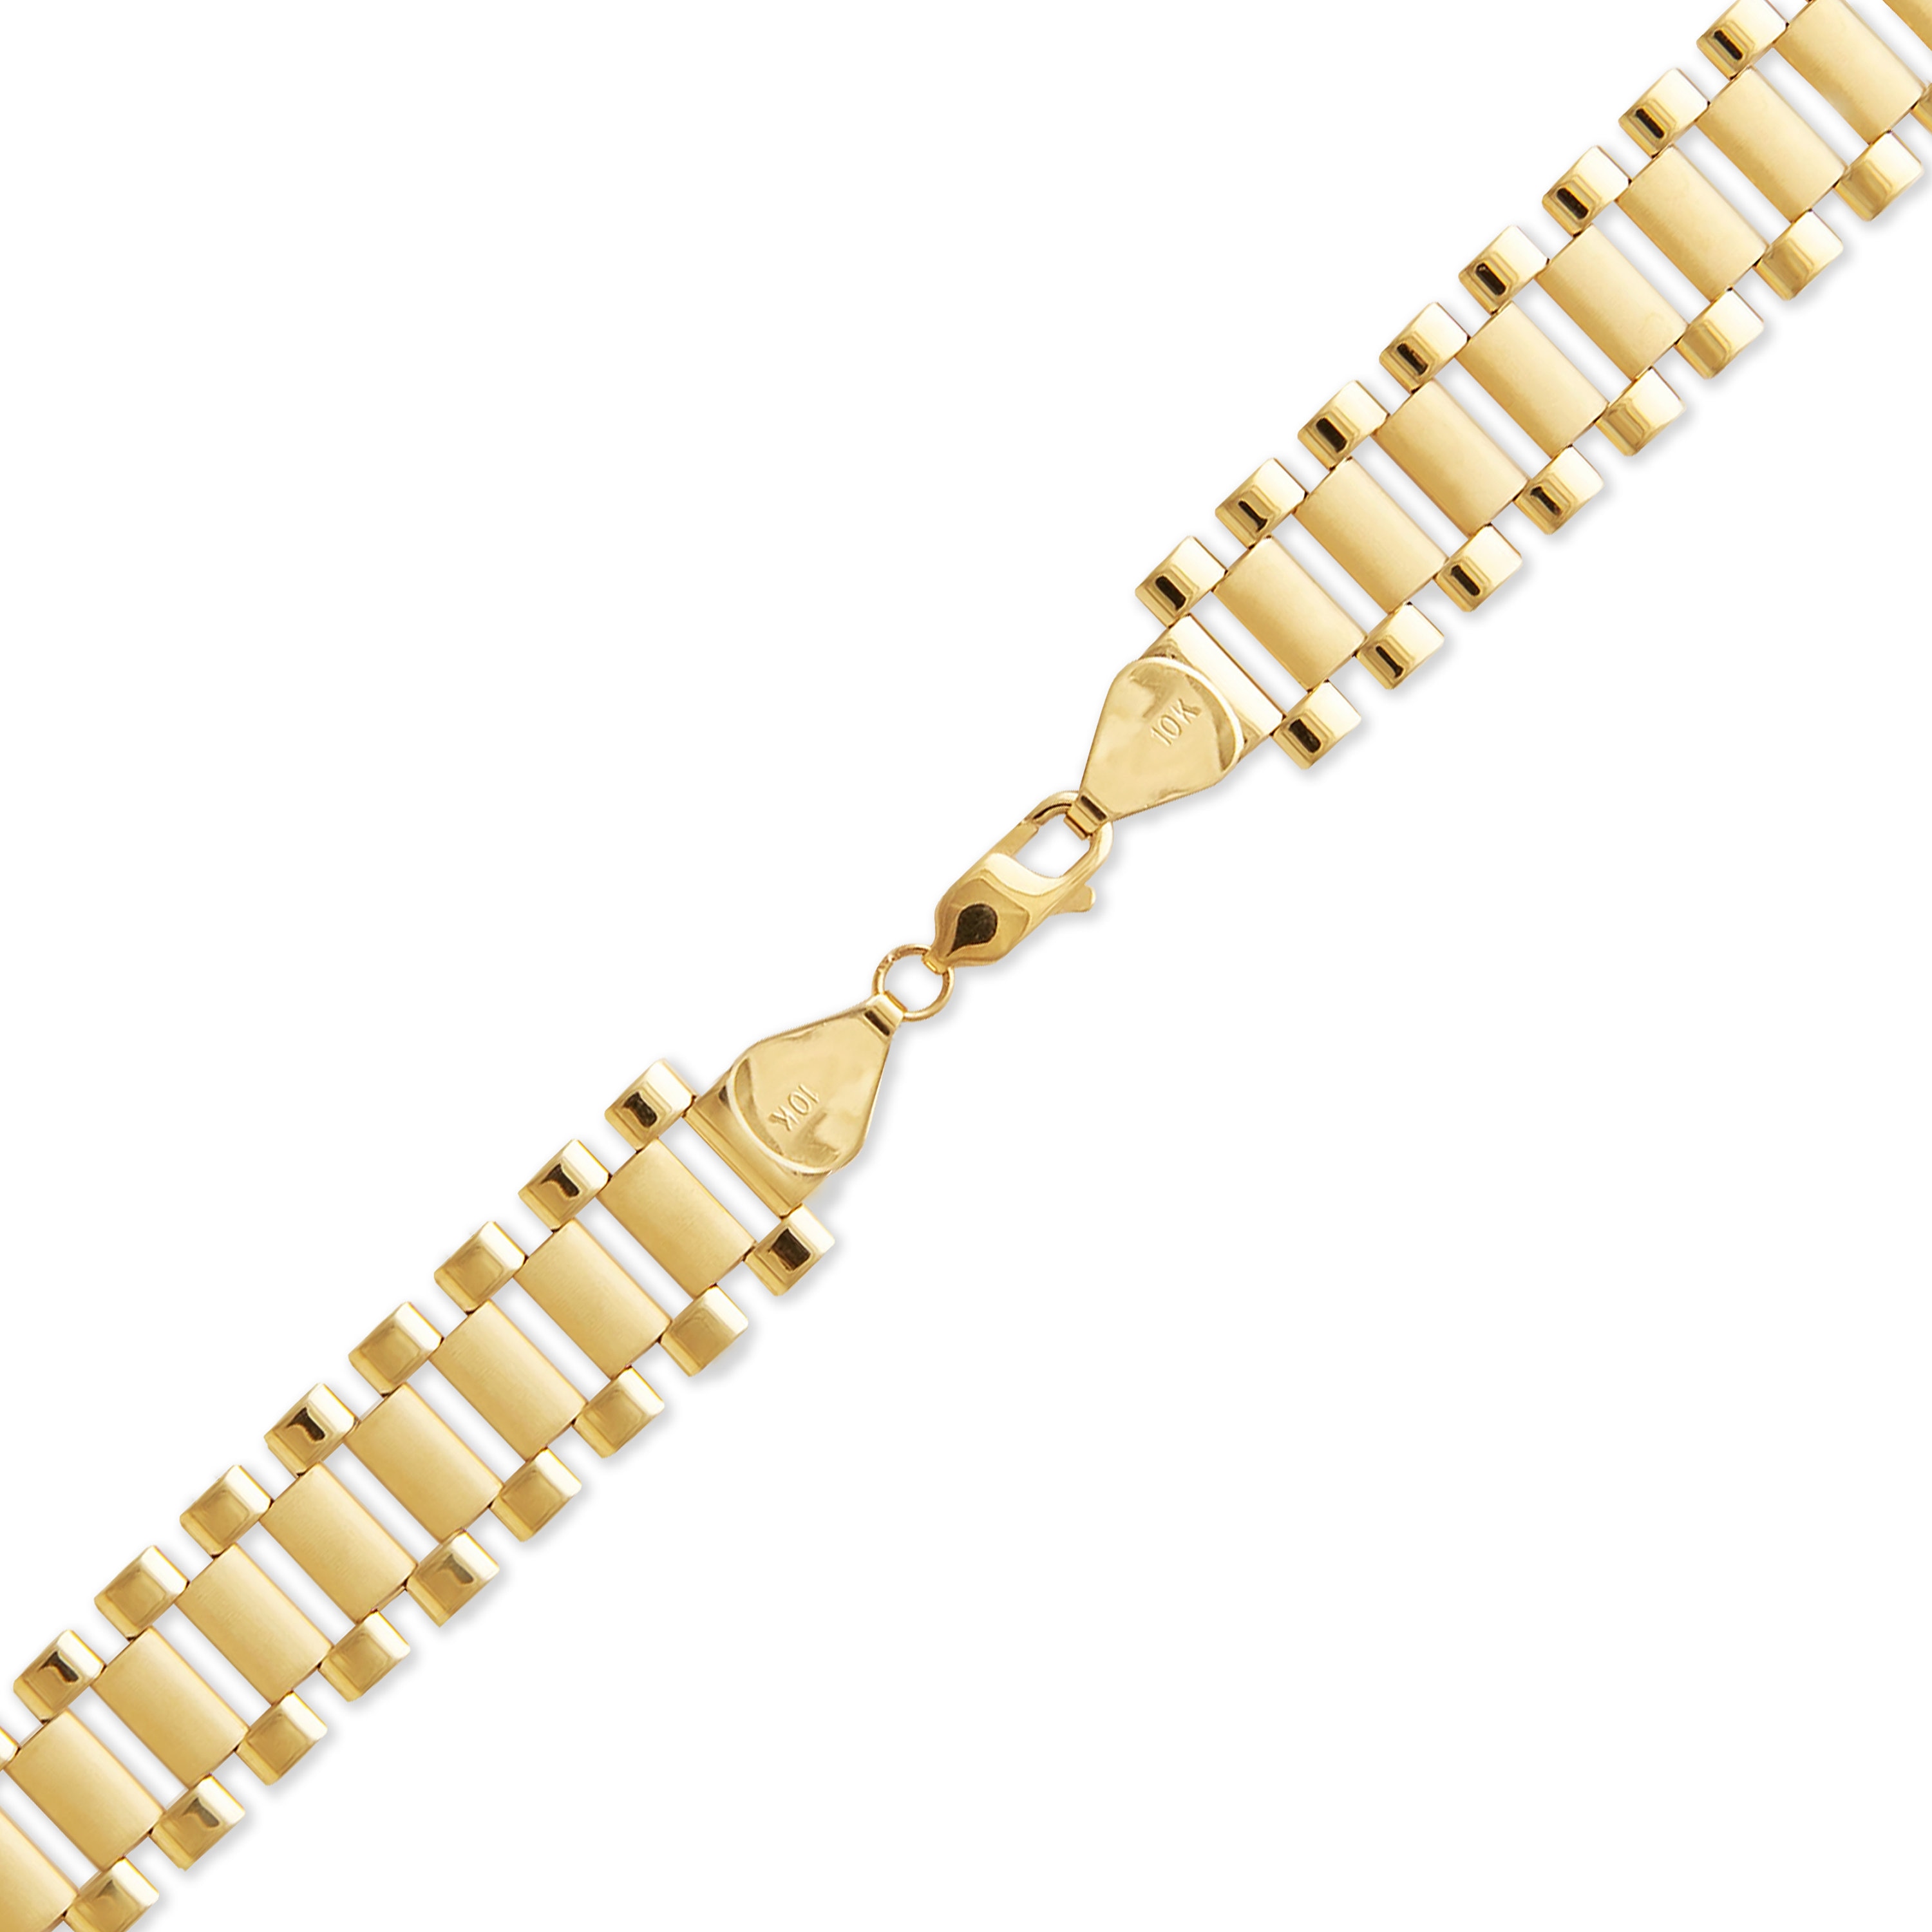 AAJ 10K Yellow Gold Bracelet - 7.2 Grams - Ruby Lane